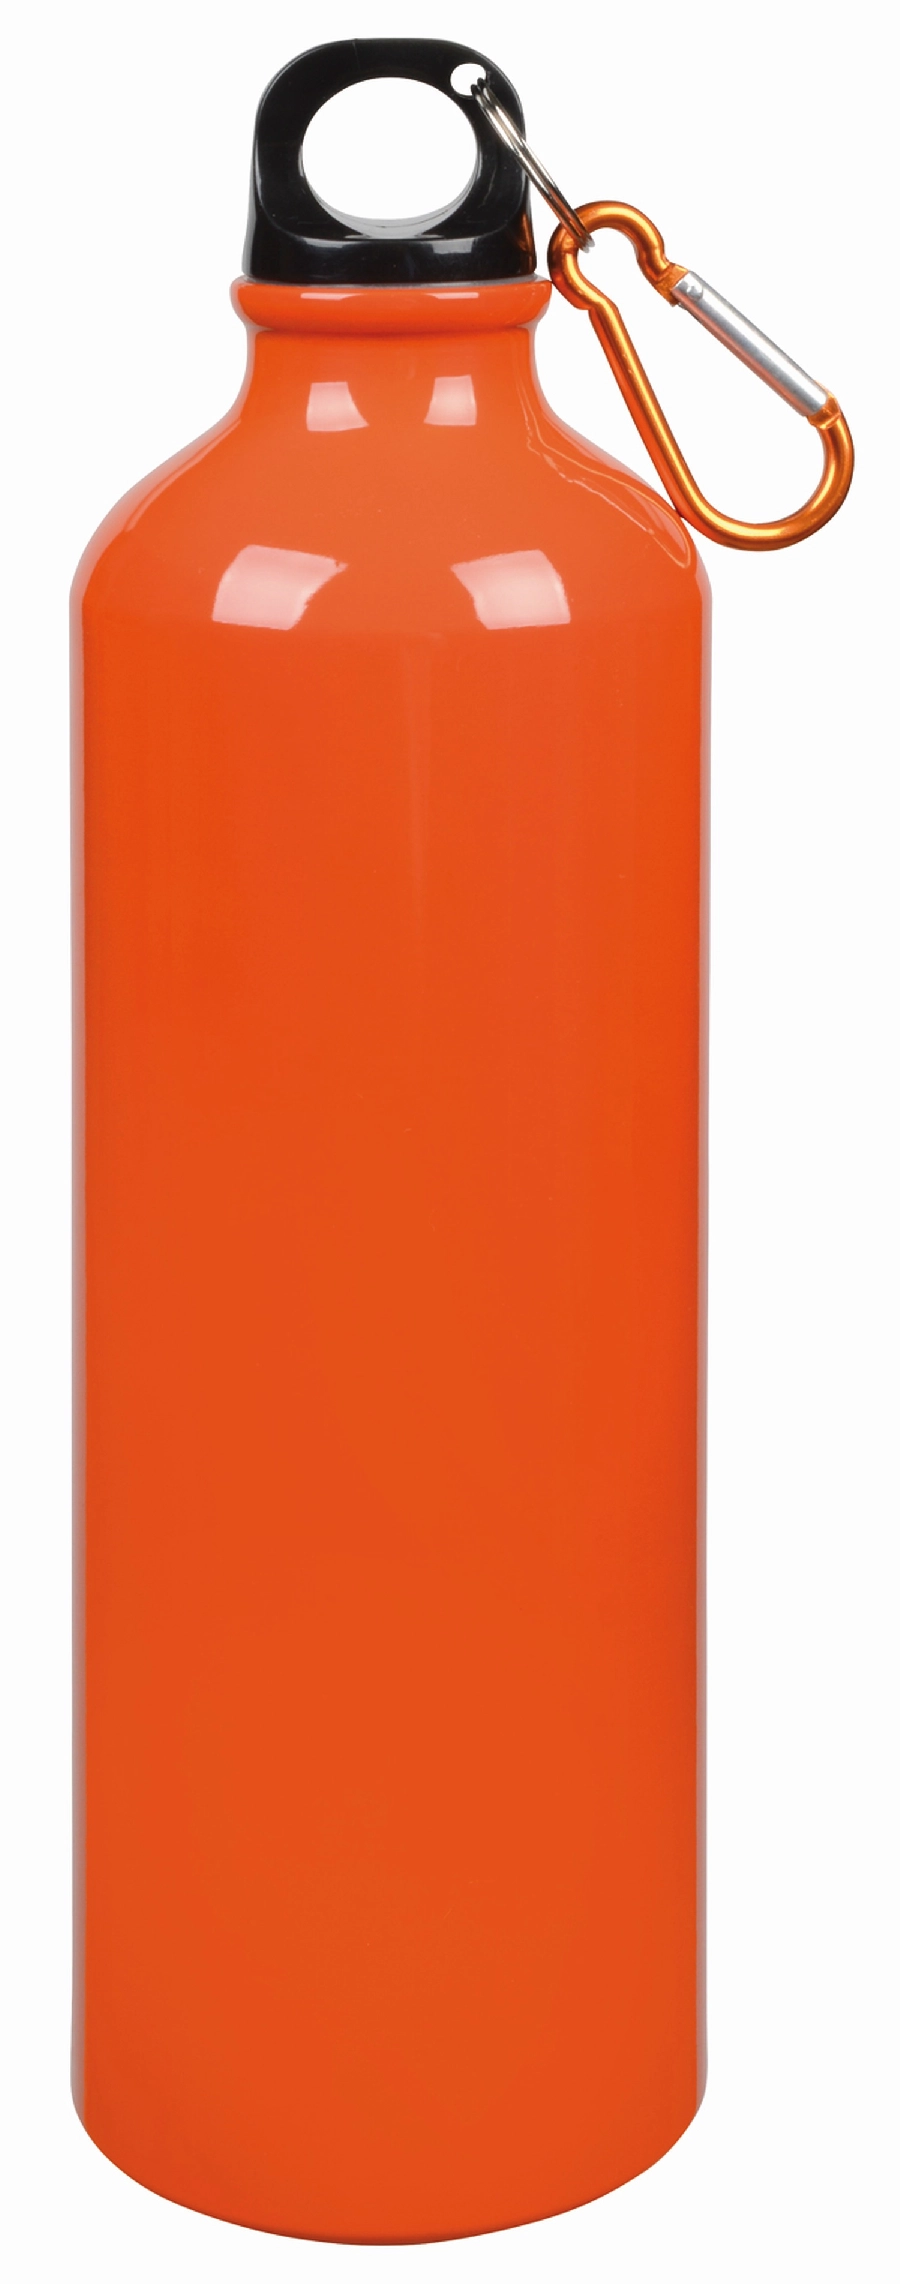 Aluminiowy bidon BIG TRANSIT, pomarańczowy 56-0603136 pomarańczowy